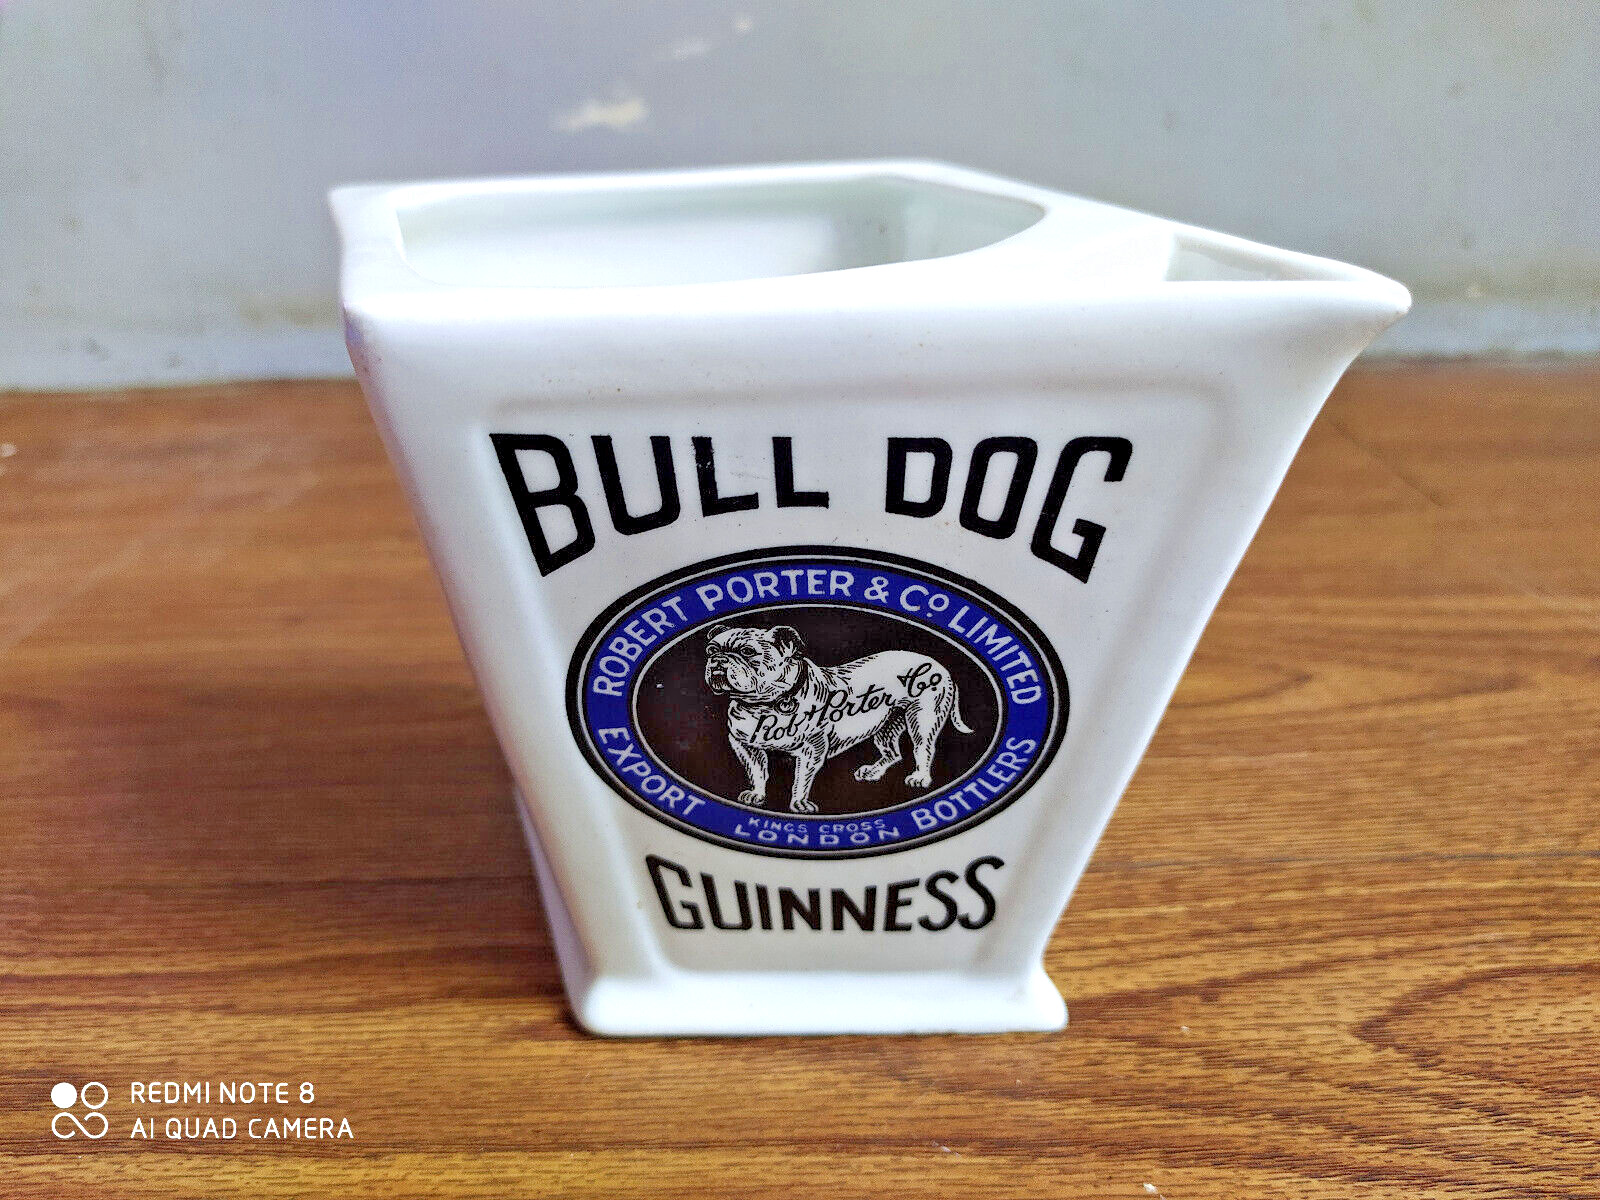 Rare vintage ROBERT PORTER & Co LTD BULL DOG GUINNESS advertising mug of 40's.